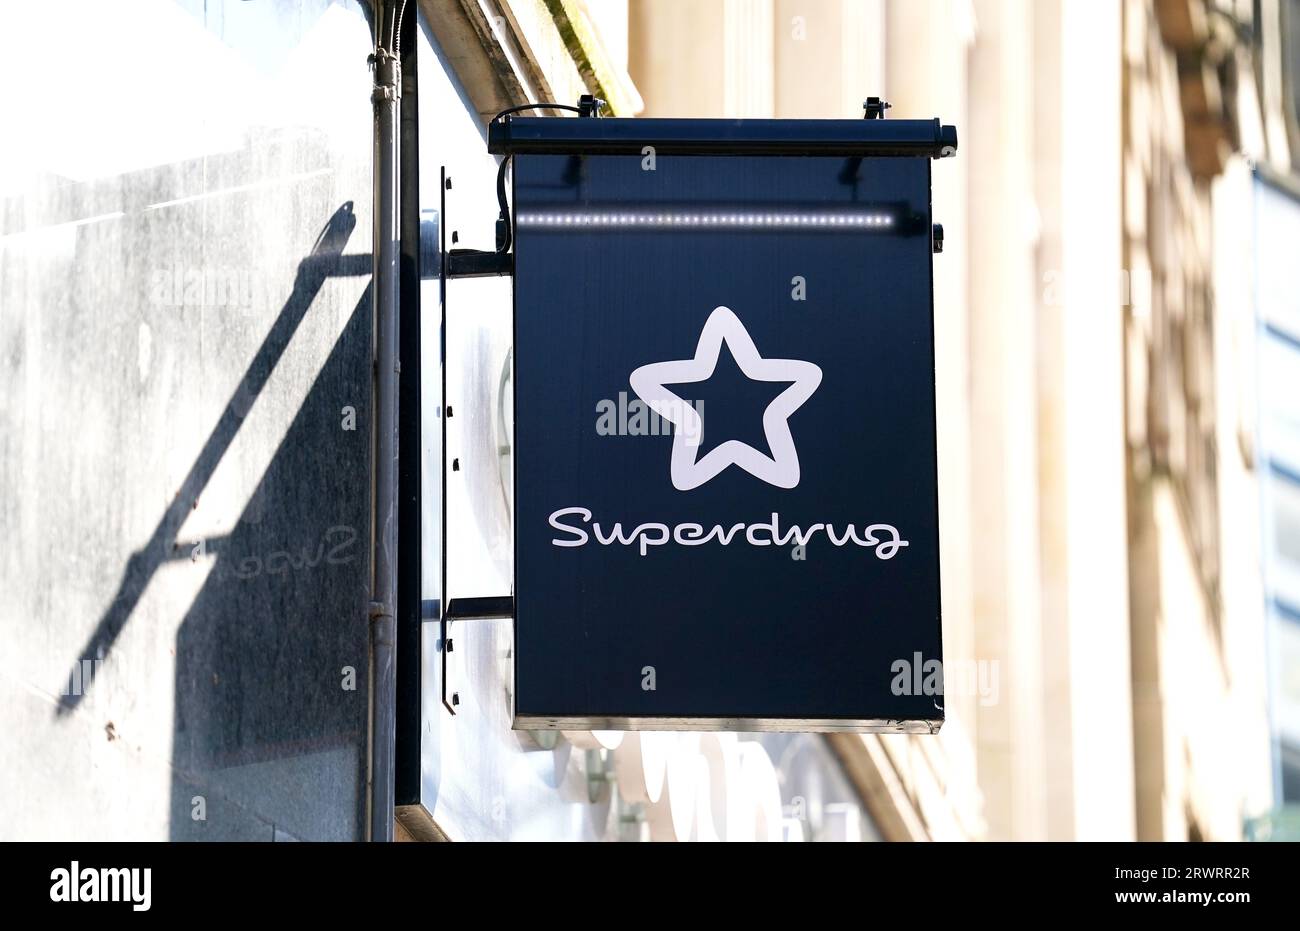 Foto del fascicolo datata 18/04/23 di una vista generale di un negozio Superdrug. Avon venderà per la prima volta i suoi prodotti nei negozi di lusso del Regno Unito come parte di un nuovo collegamento con Superdrug. Foto Stock